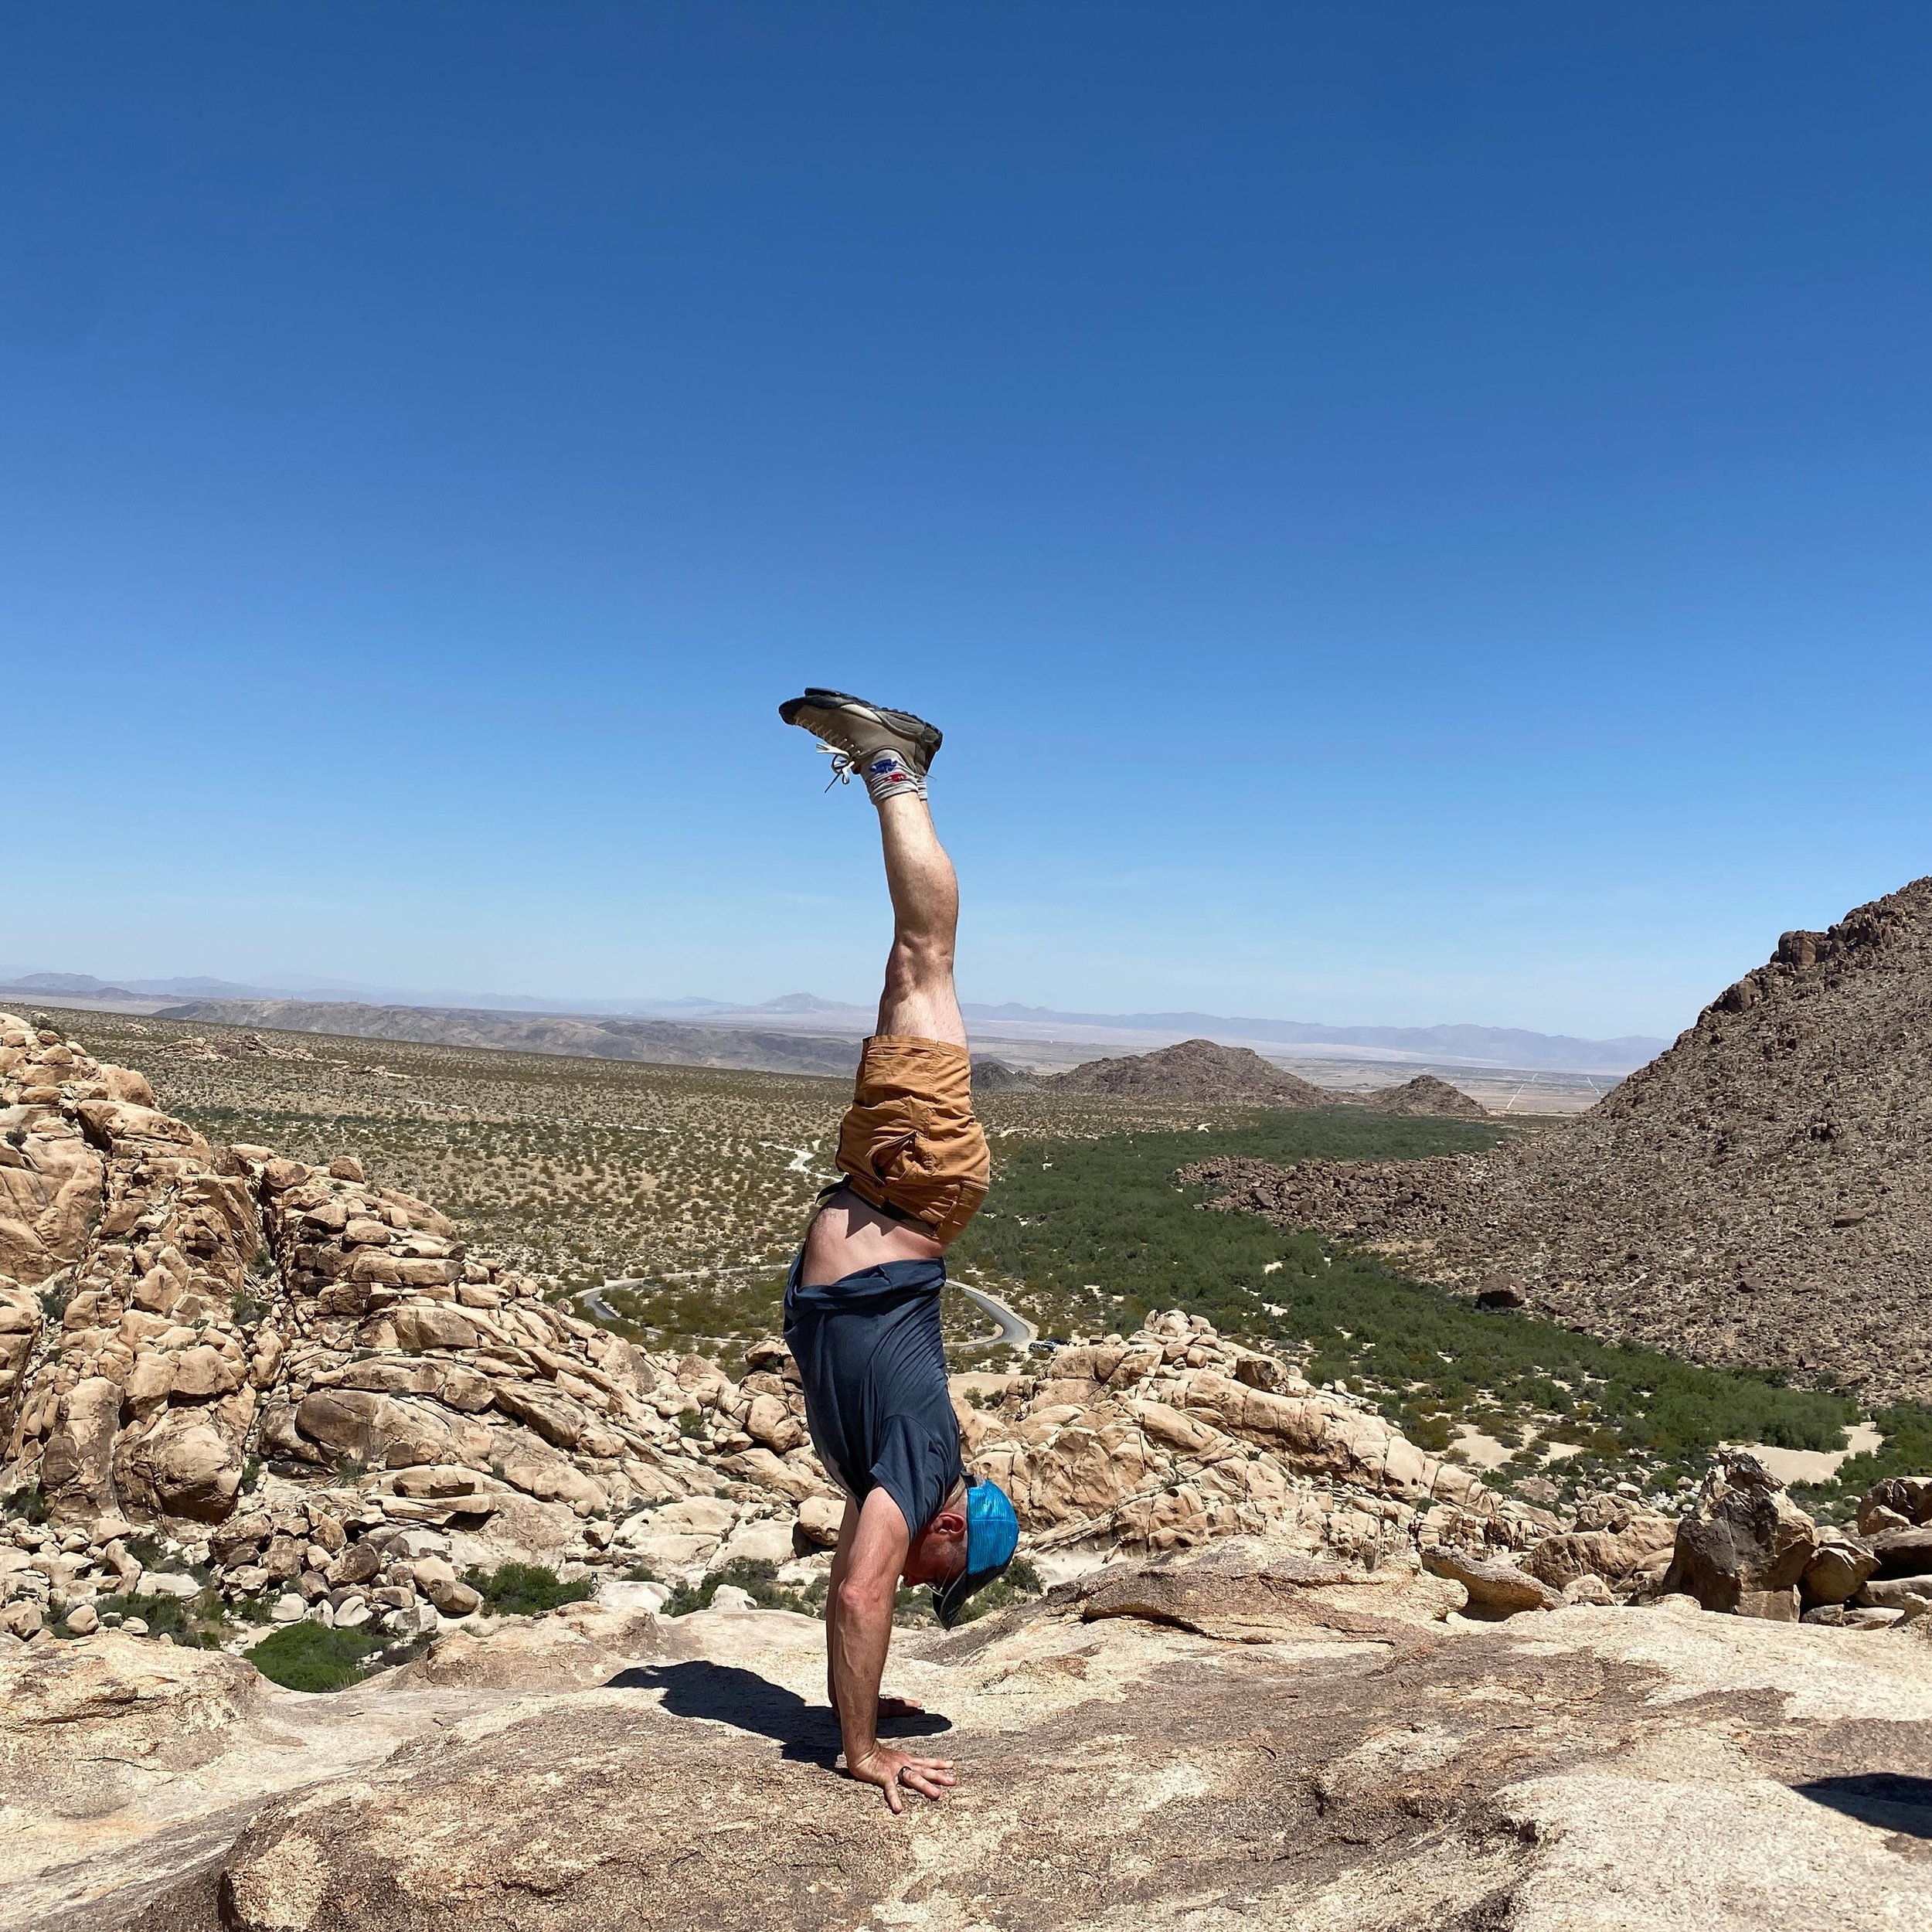 Handstanding it up in Joshua Tree on the rattlesnake Canyon Trail. 

#petegyoga #iwalkinbeauty #joshuatreeyogaretreat ogaretreat